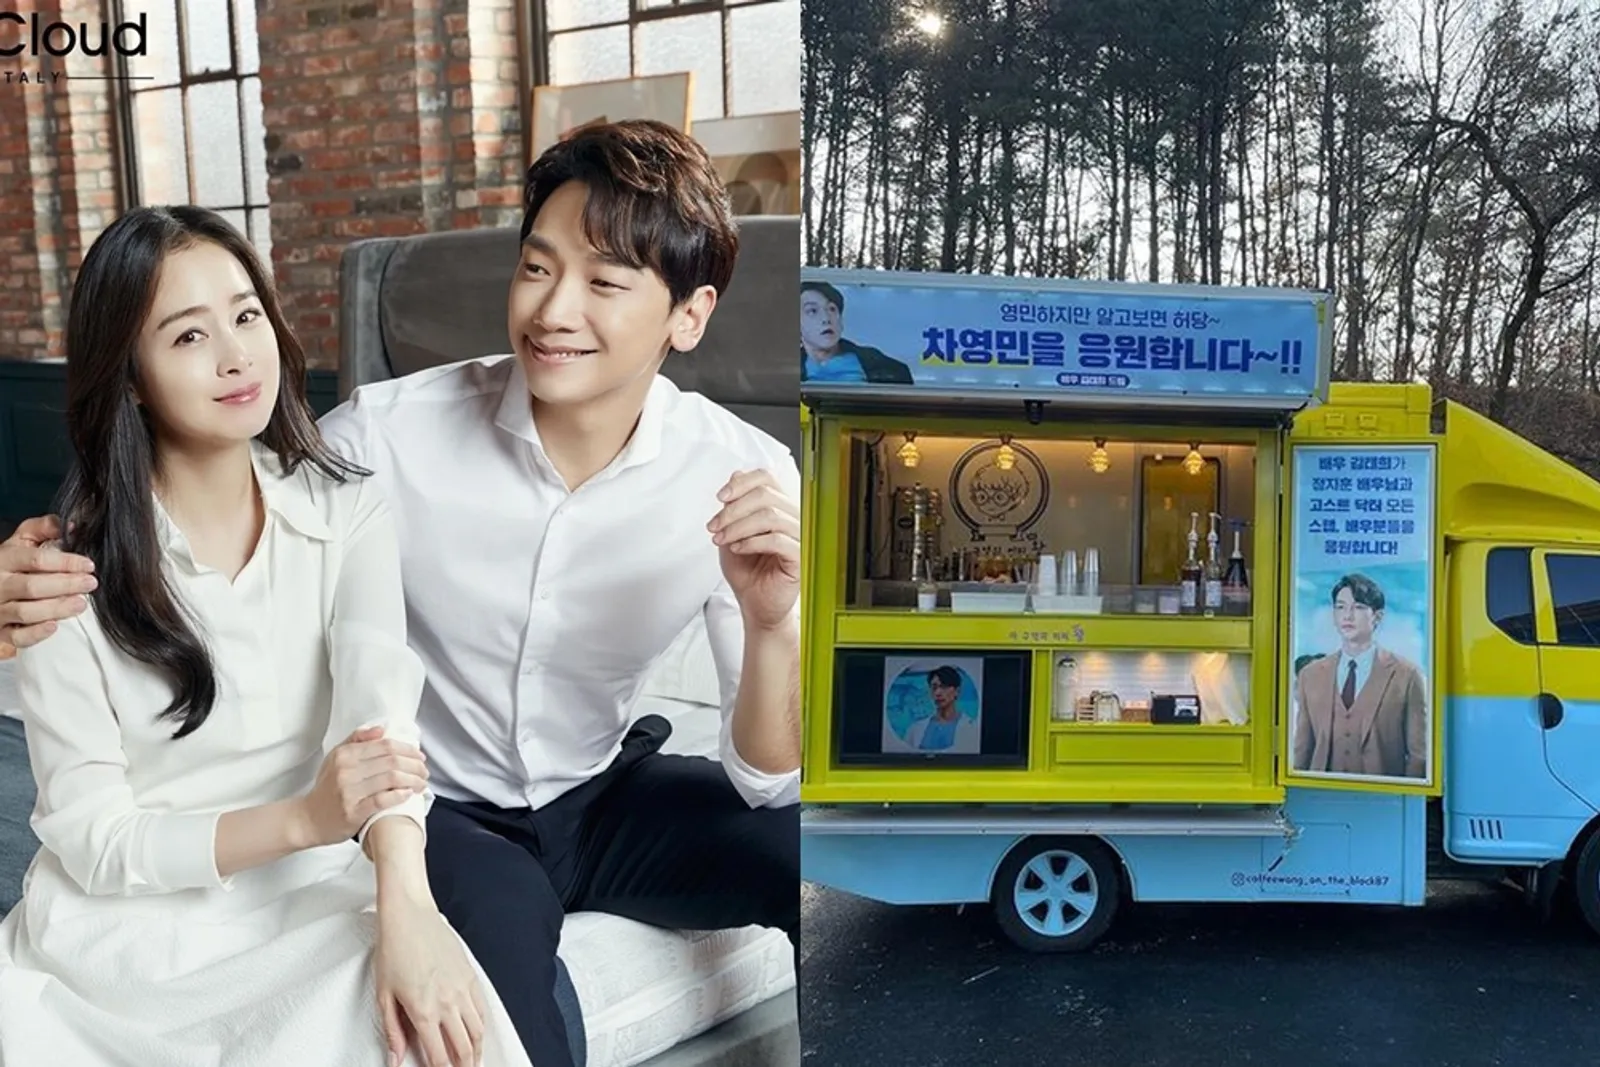 Deretan Artis Korea yang Mengirimkan Food Truck untuk Pasangannya